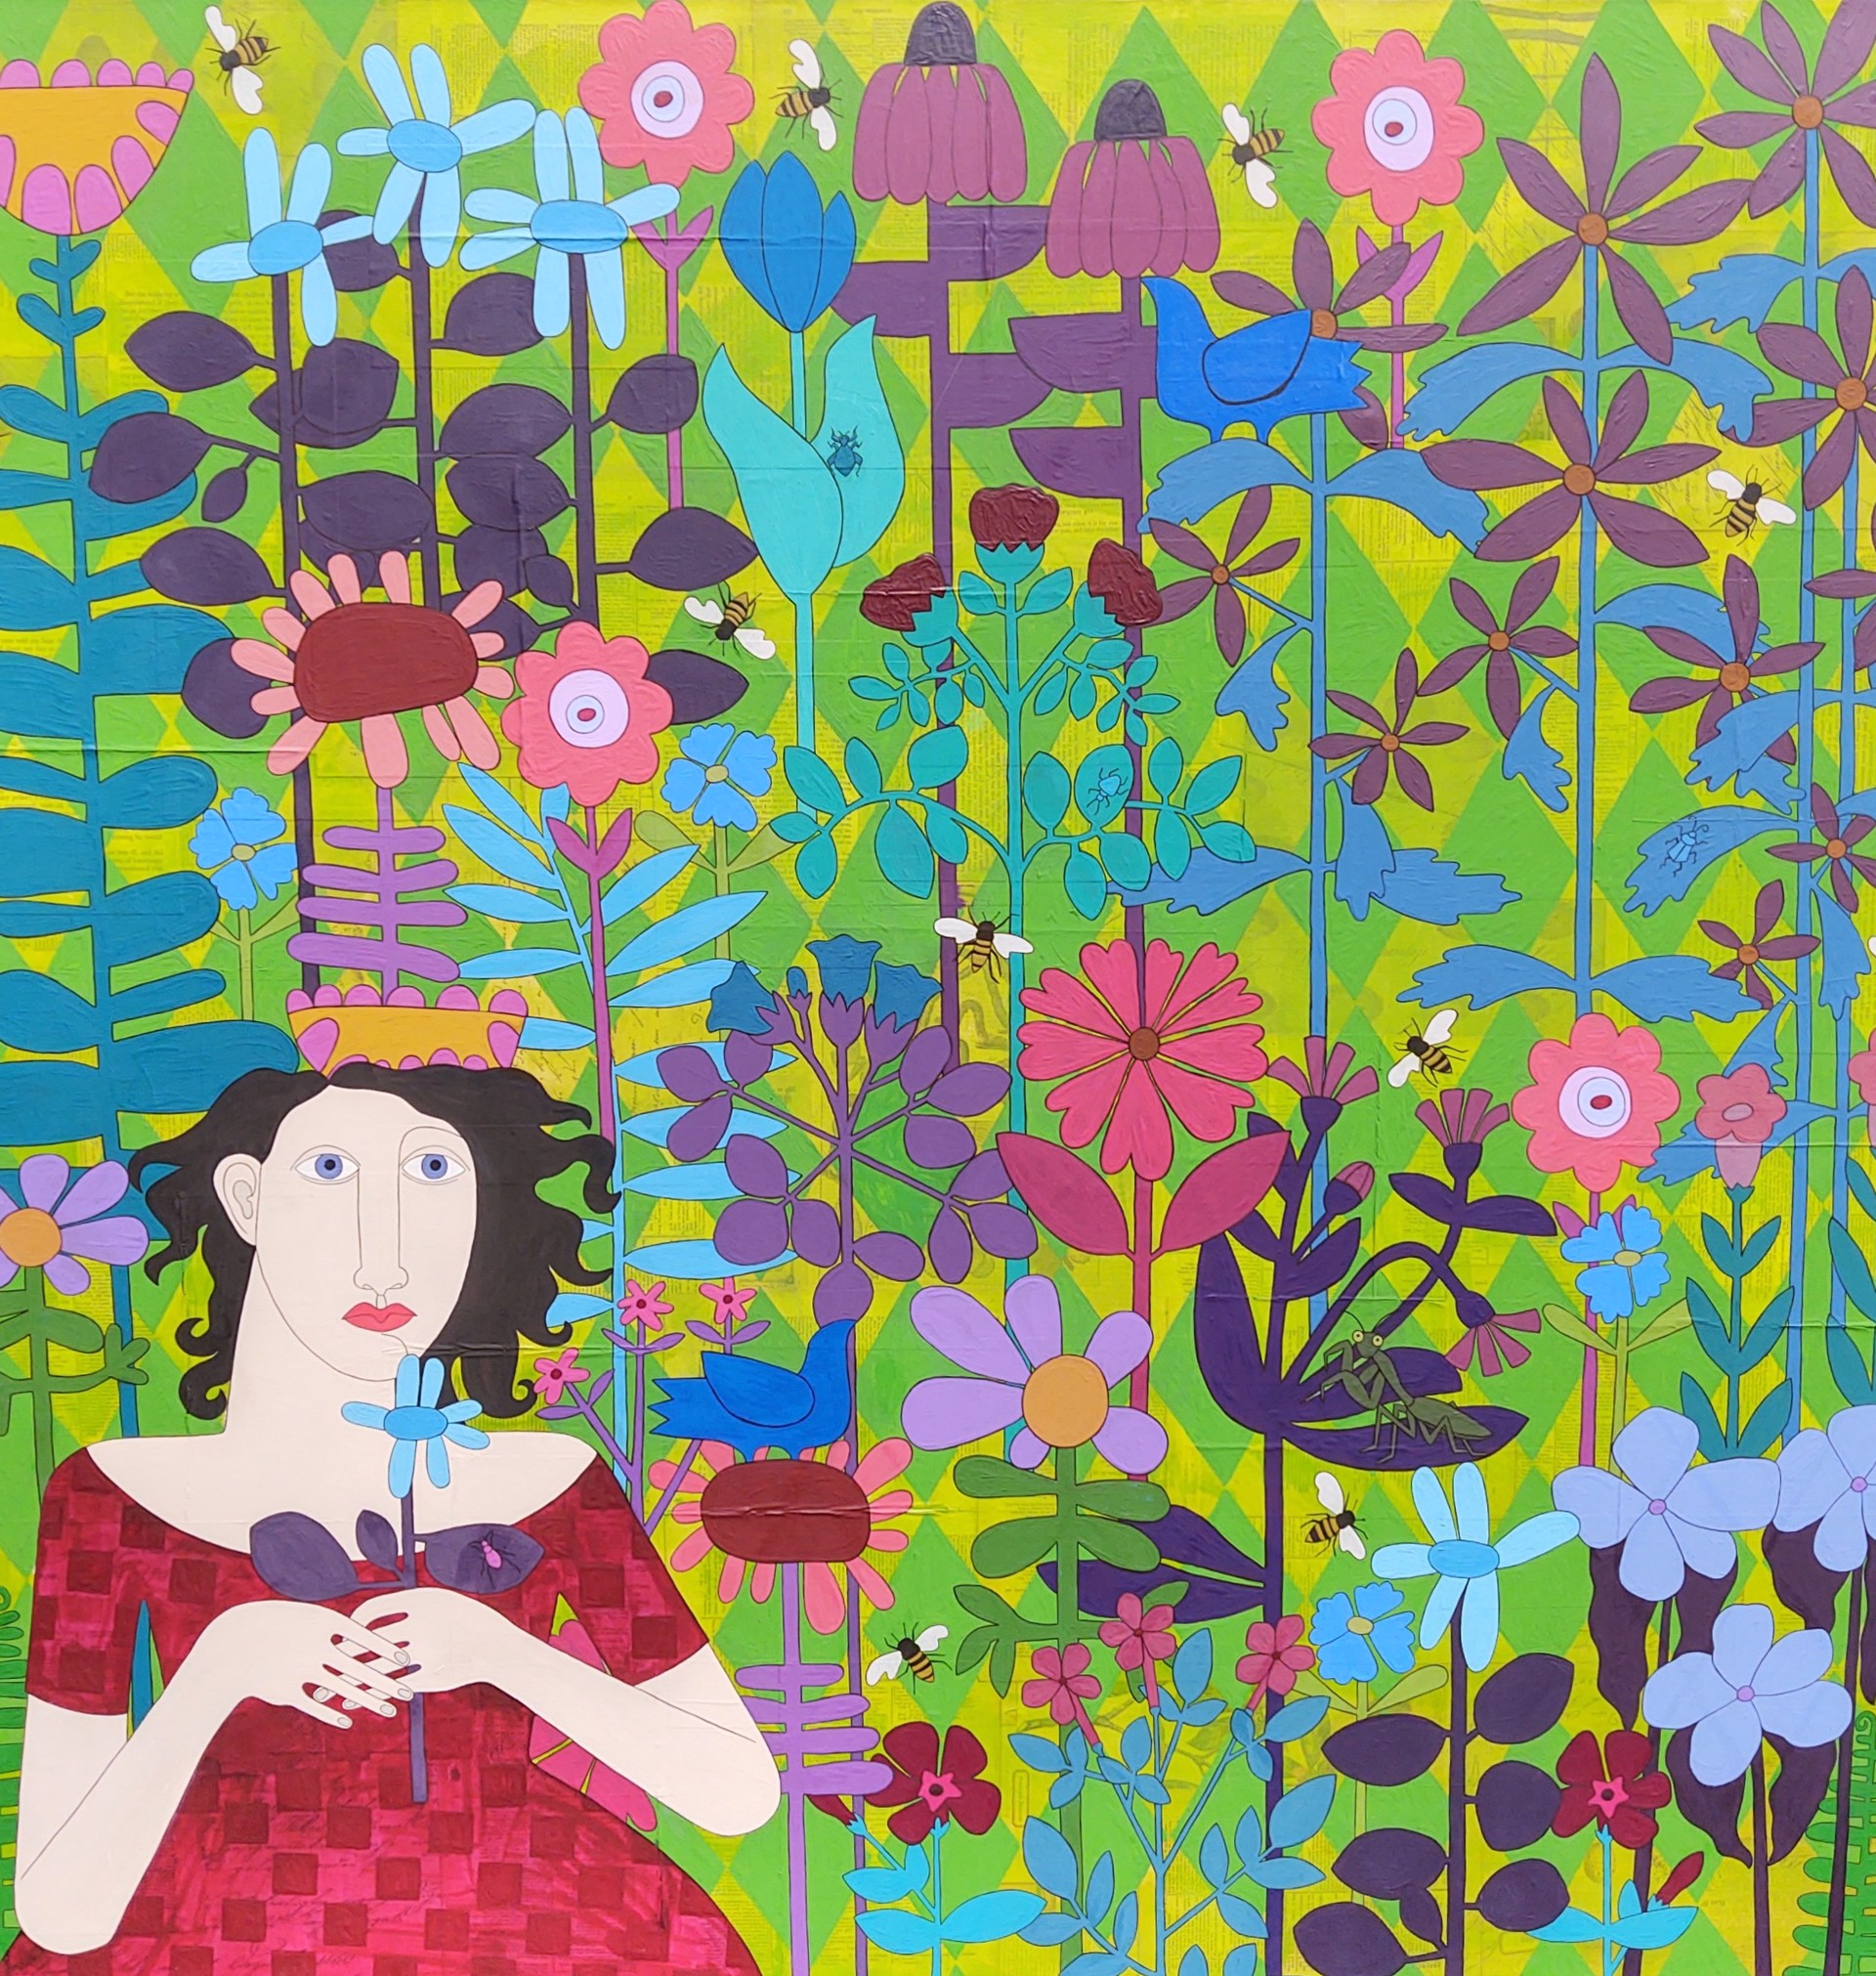 In Her Garden by Irene Gates